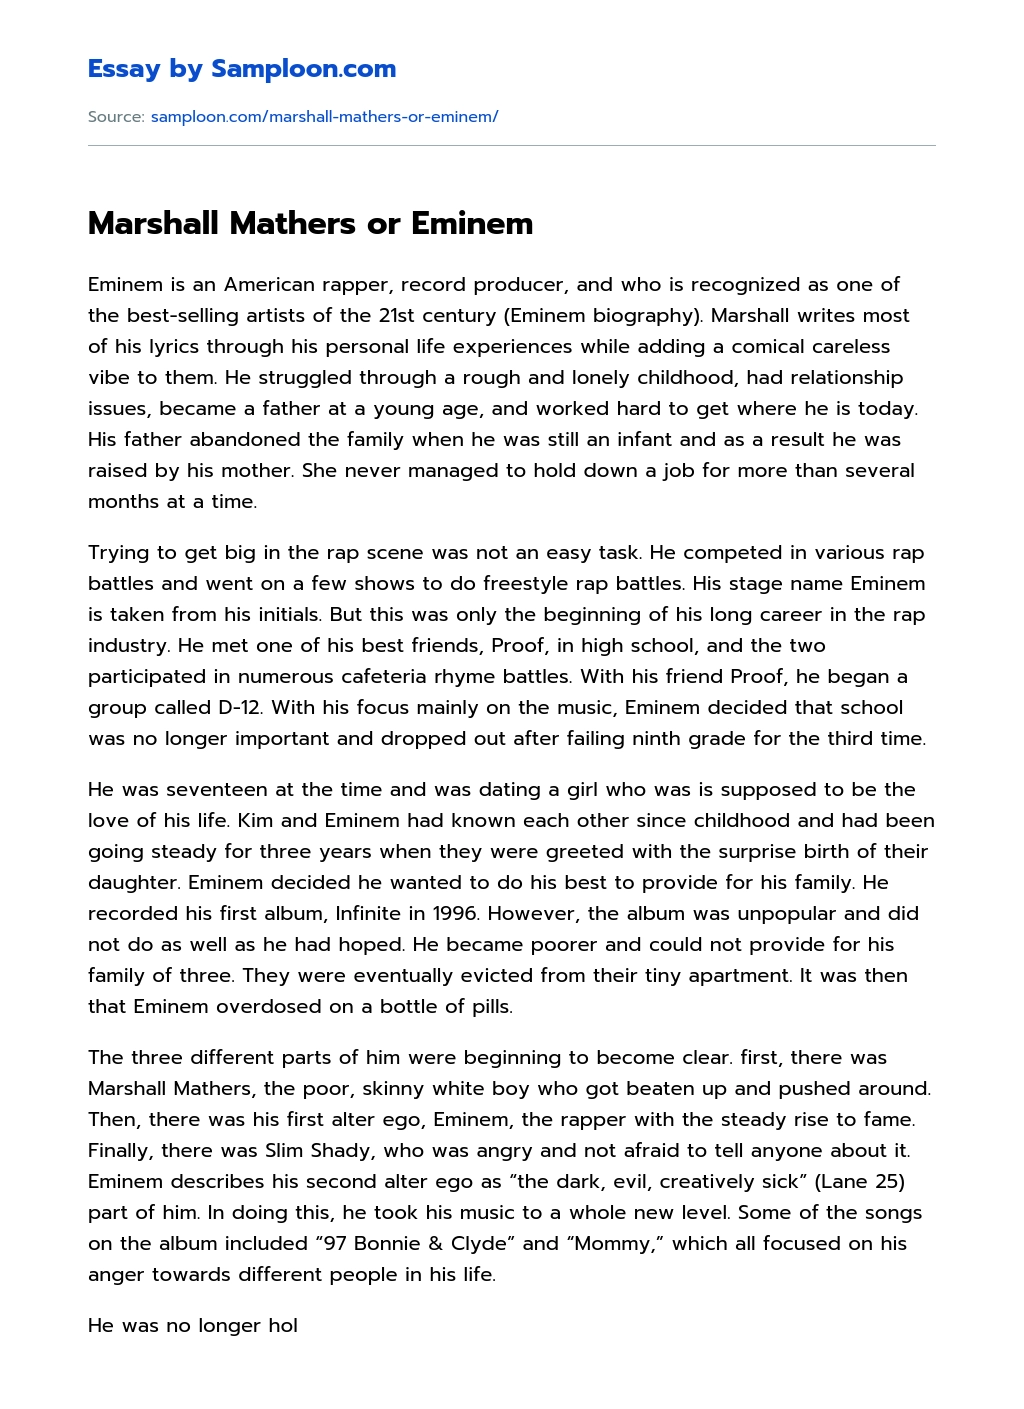 Marshall Mathers or Eminem essay